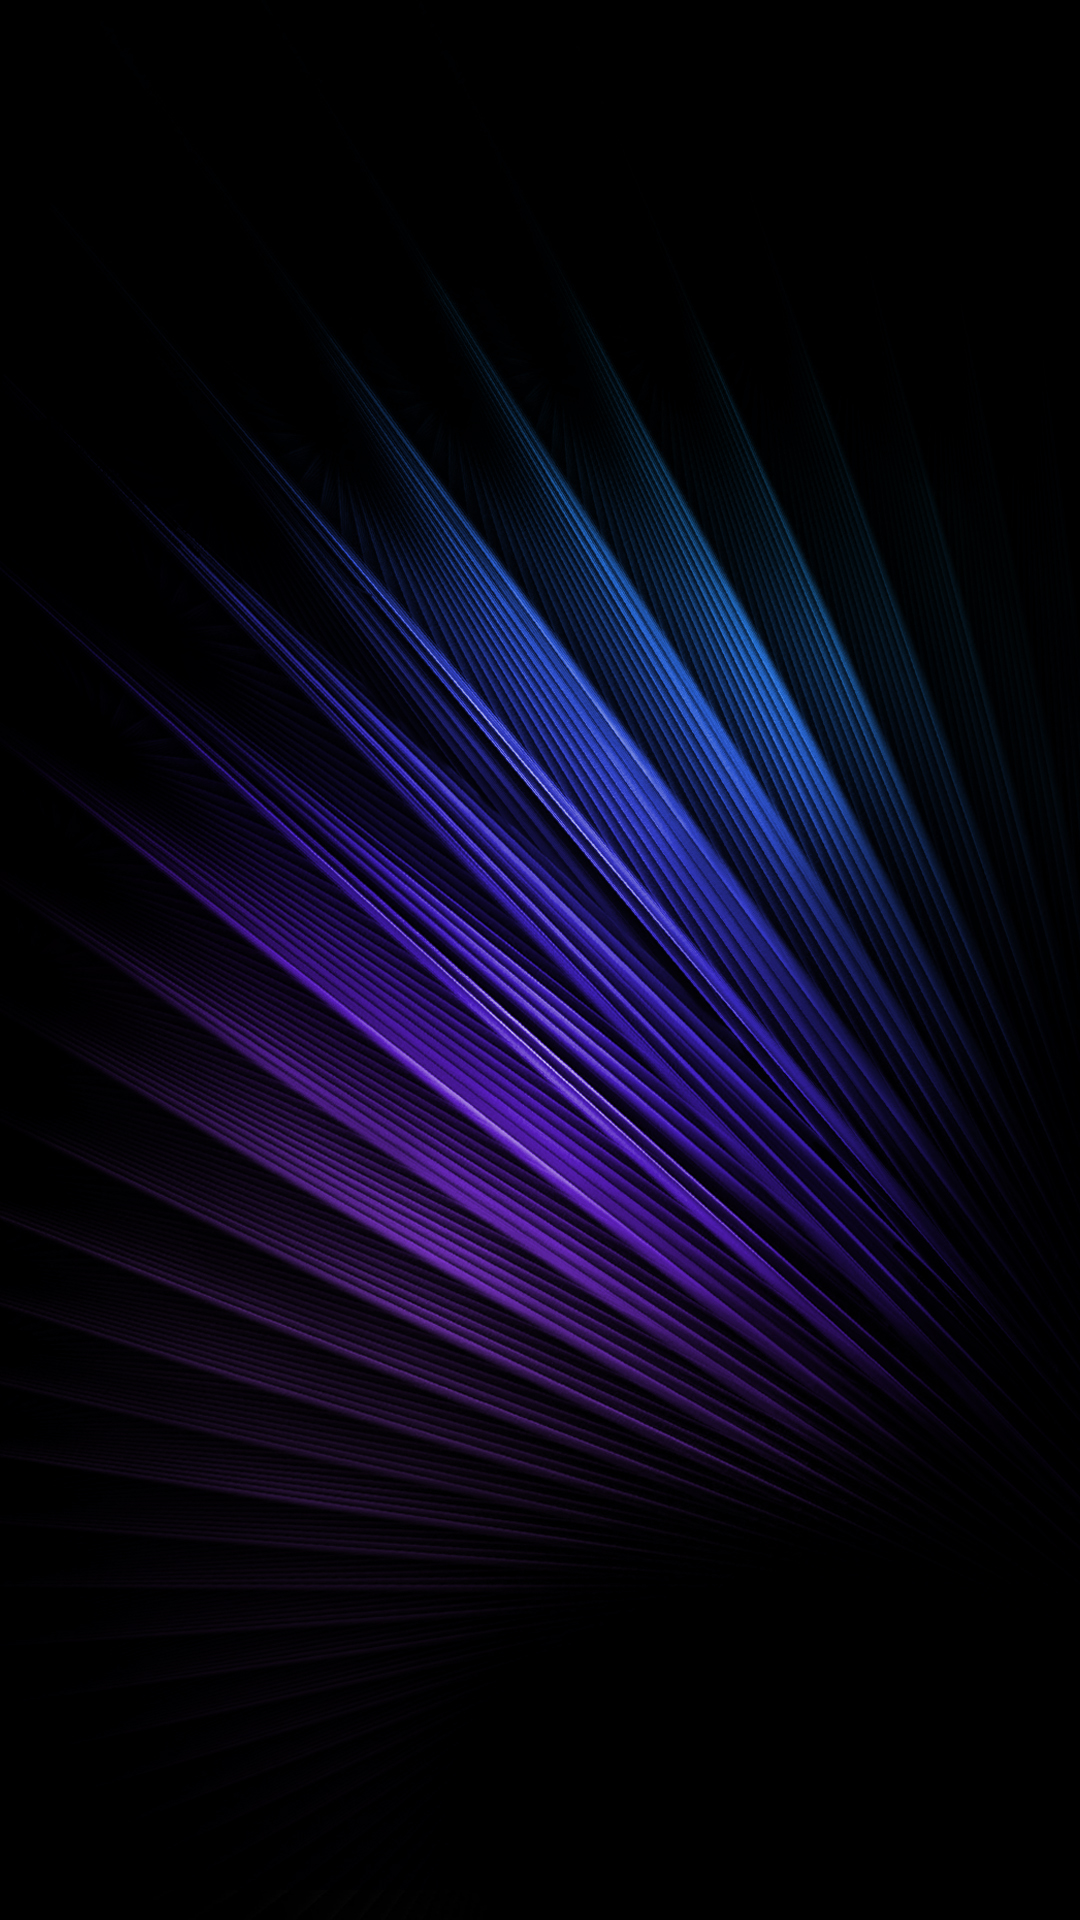 illusion d'optique fond d'écran iphone,bleu,noir,violet,violet,bleu électrique